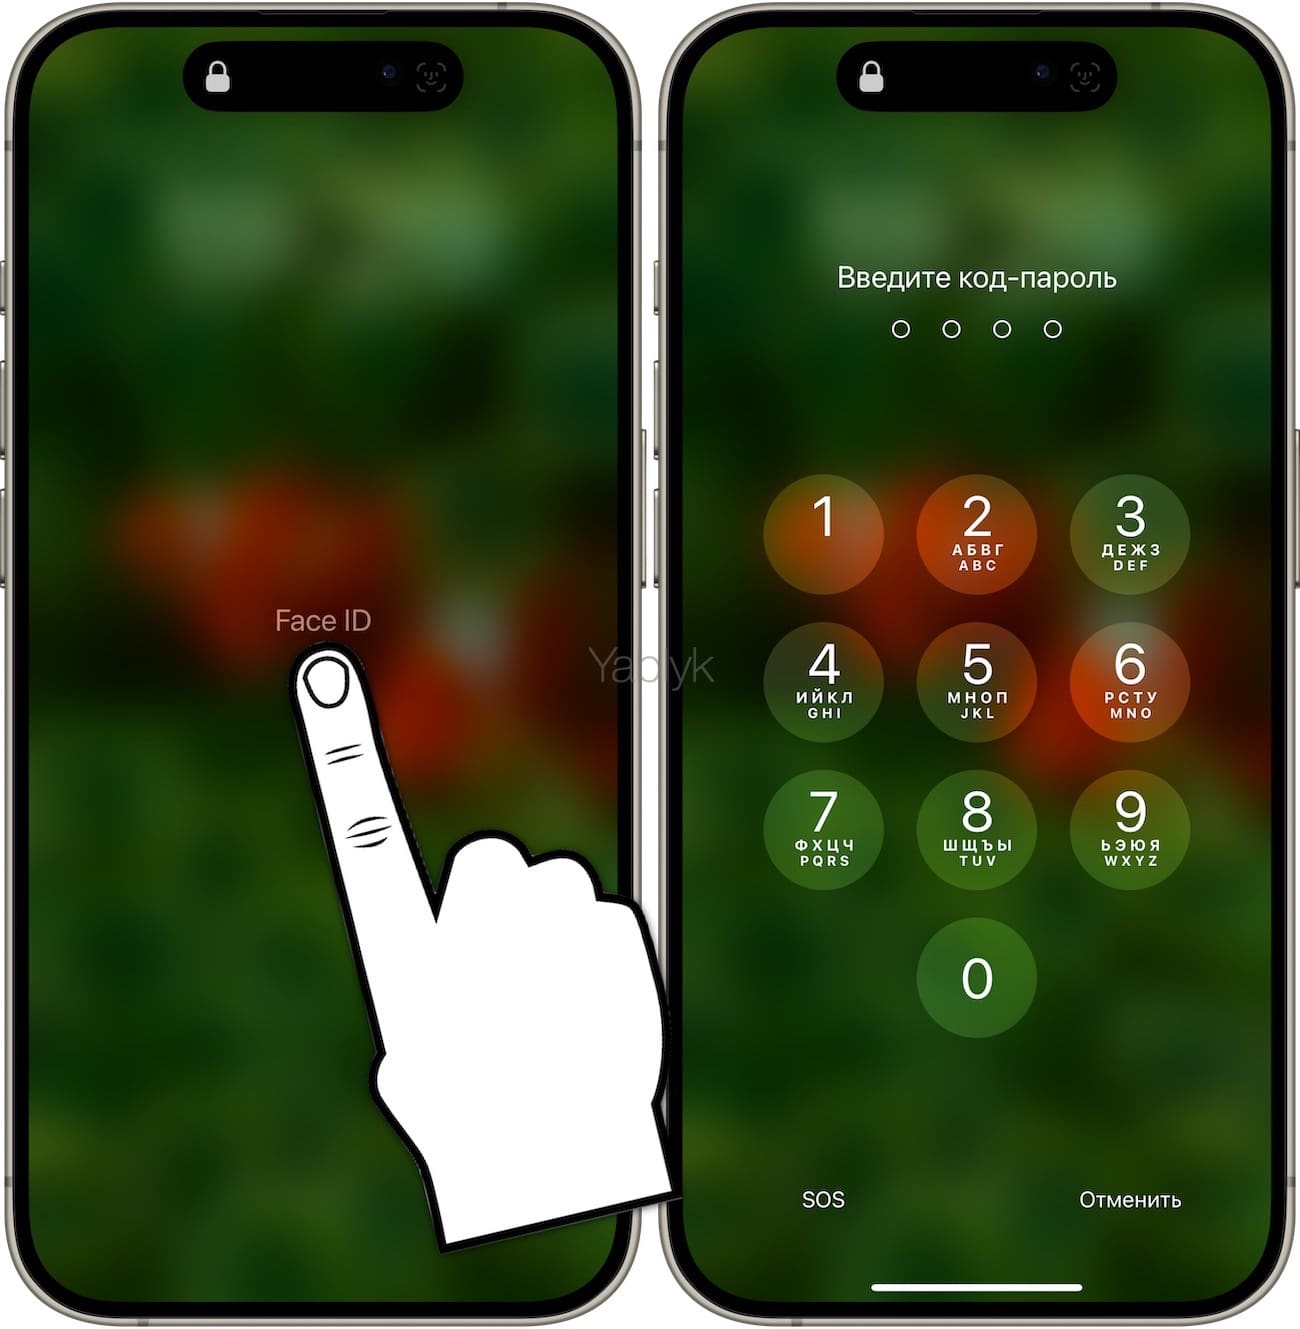 Как быстро открыть экран ввода код-пароля на iPhone c Face ID